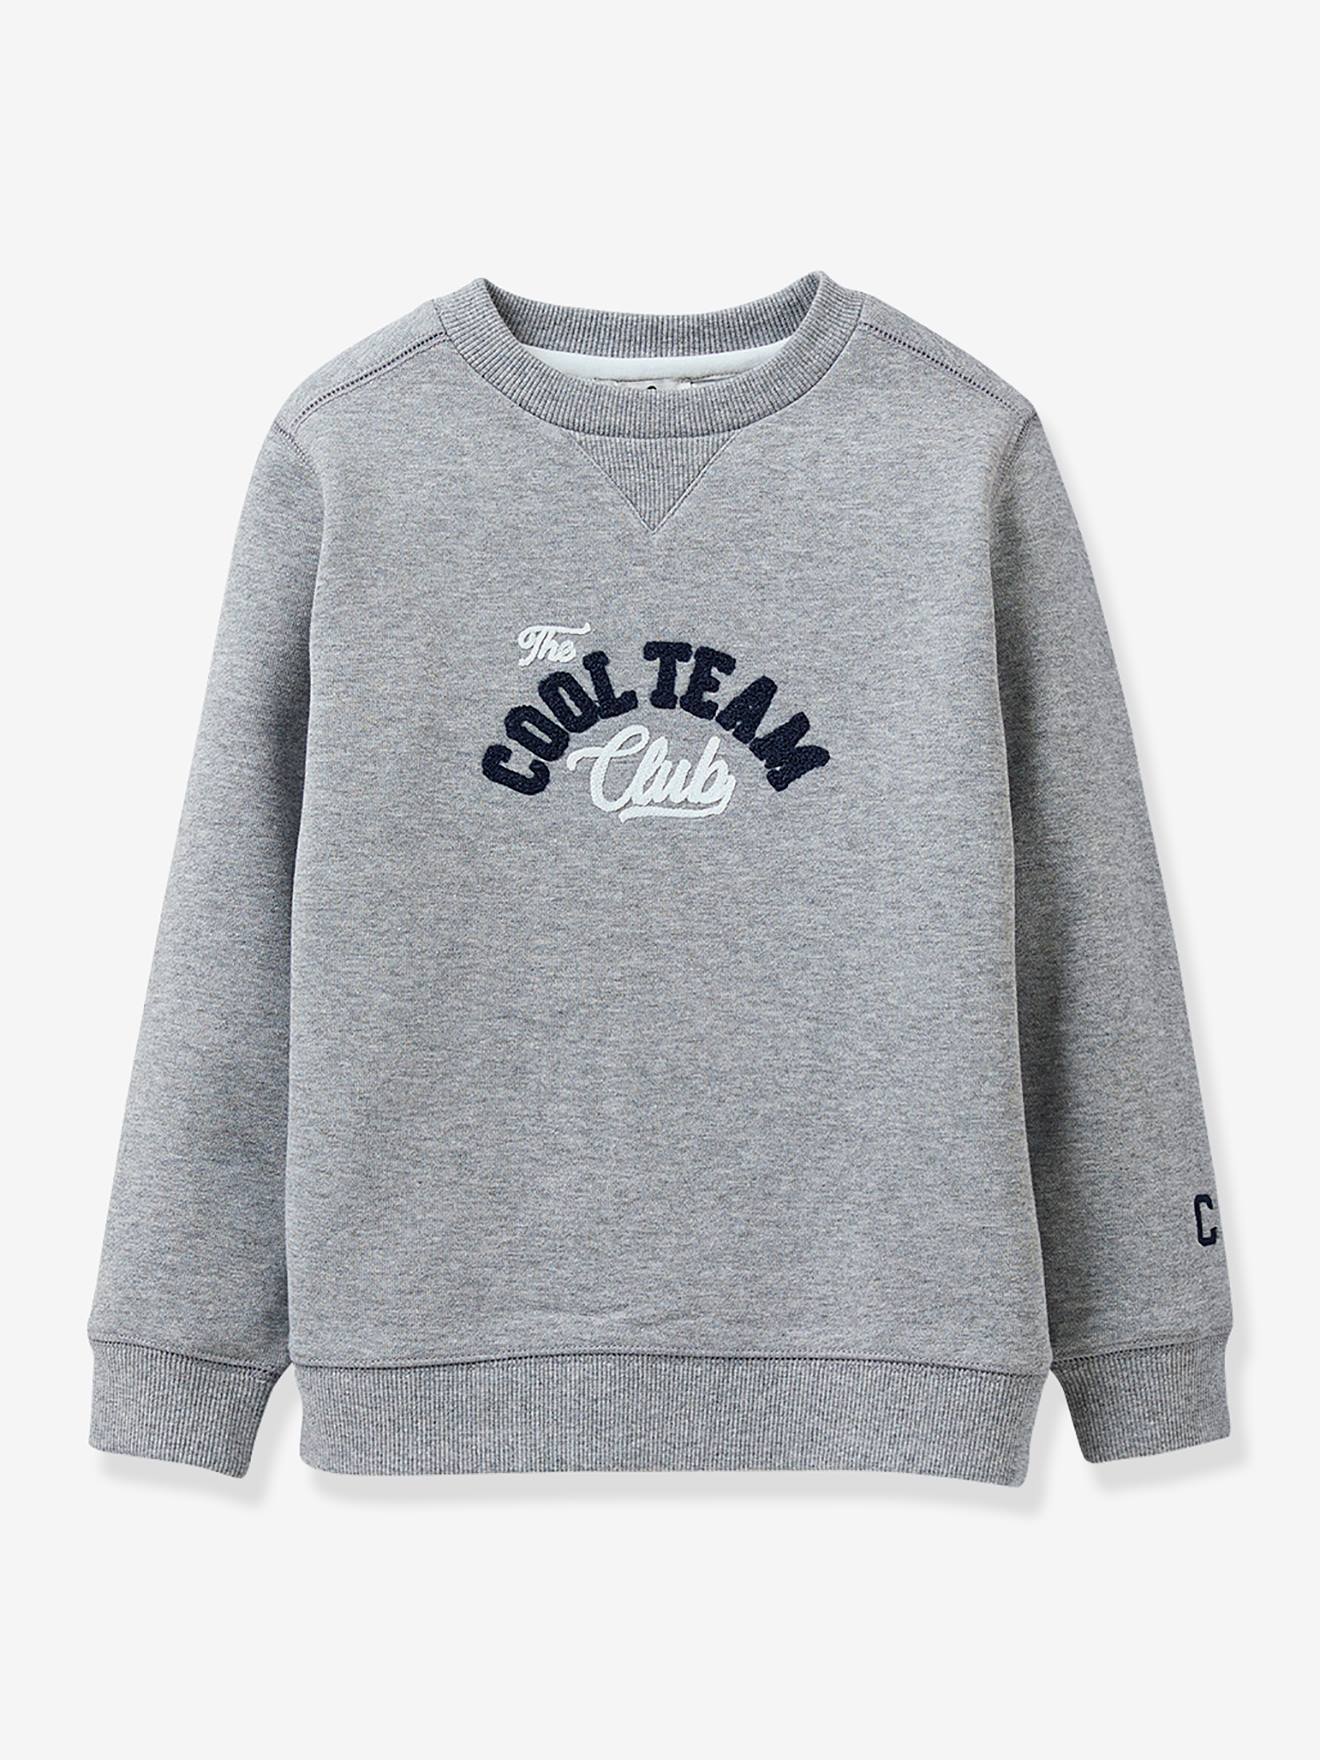 CYRILLUS jongenssweater "cool team" gemêleerd grijs